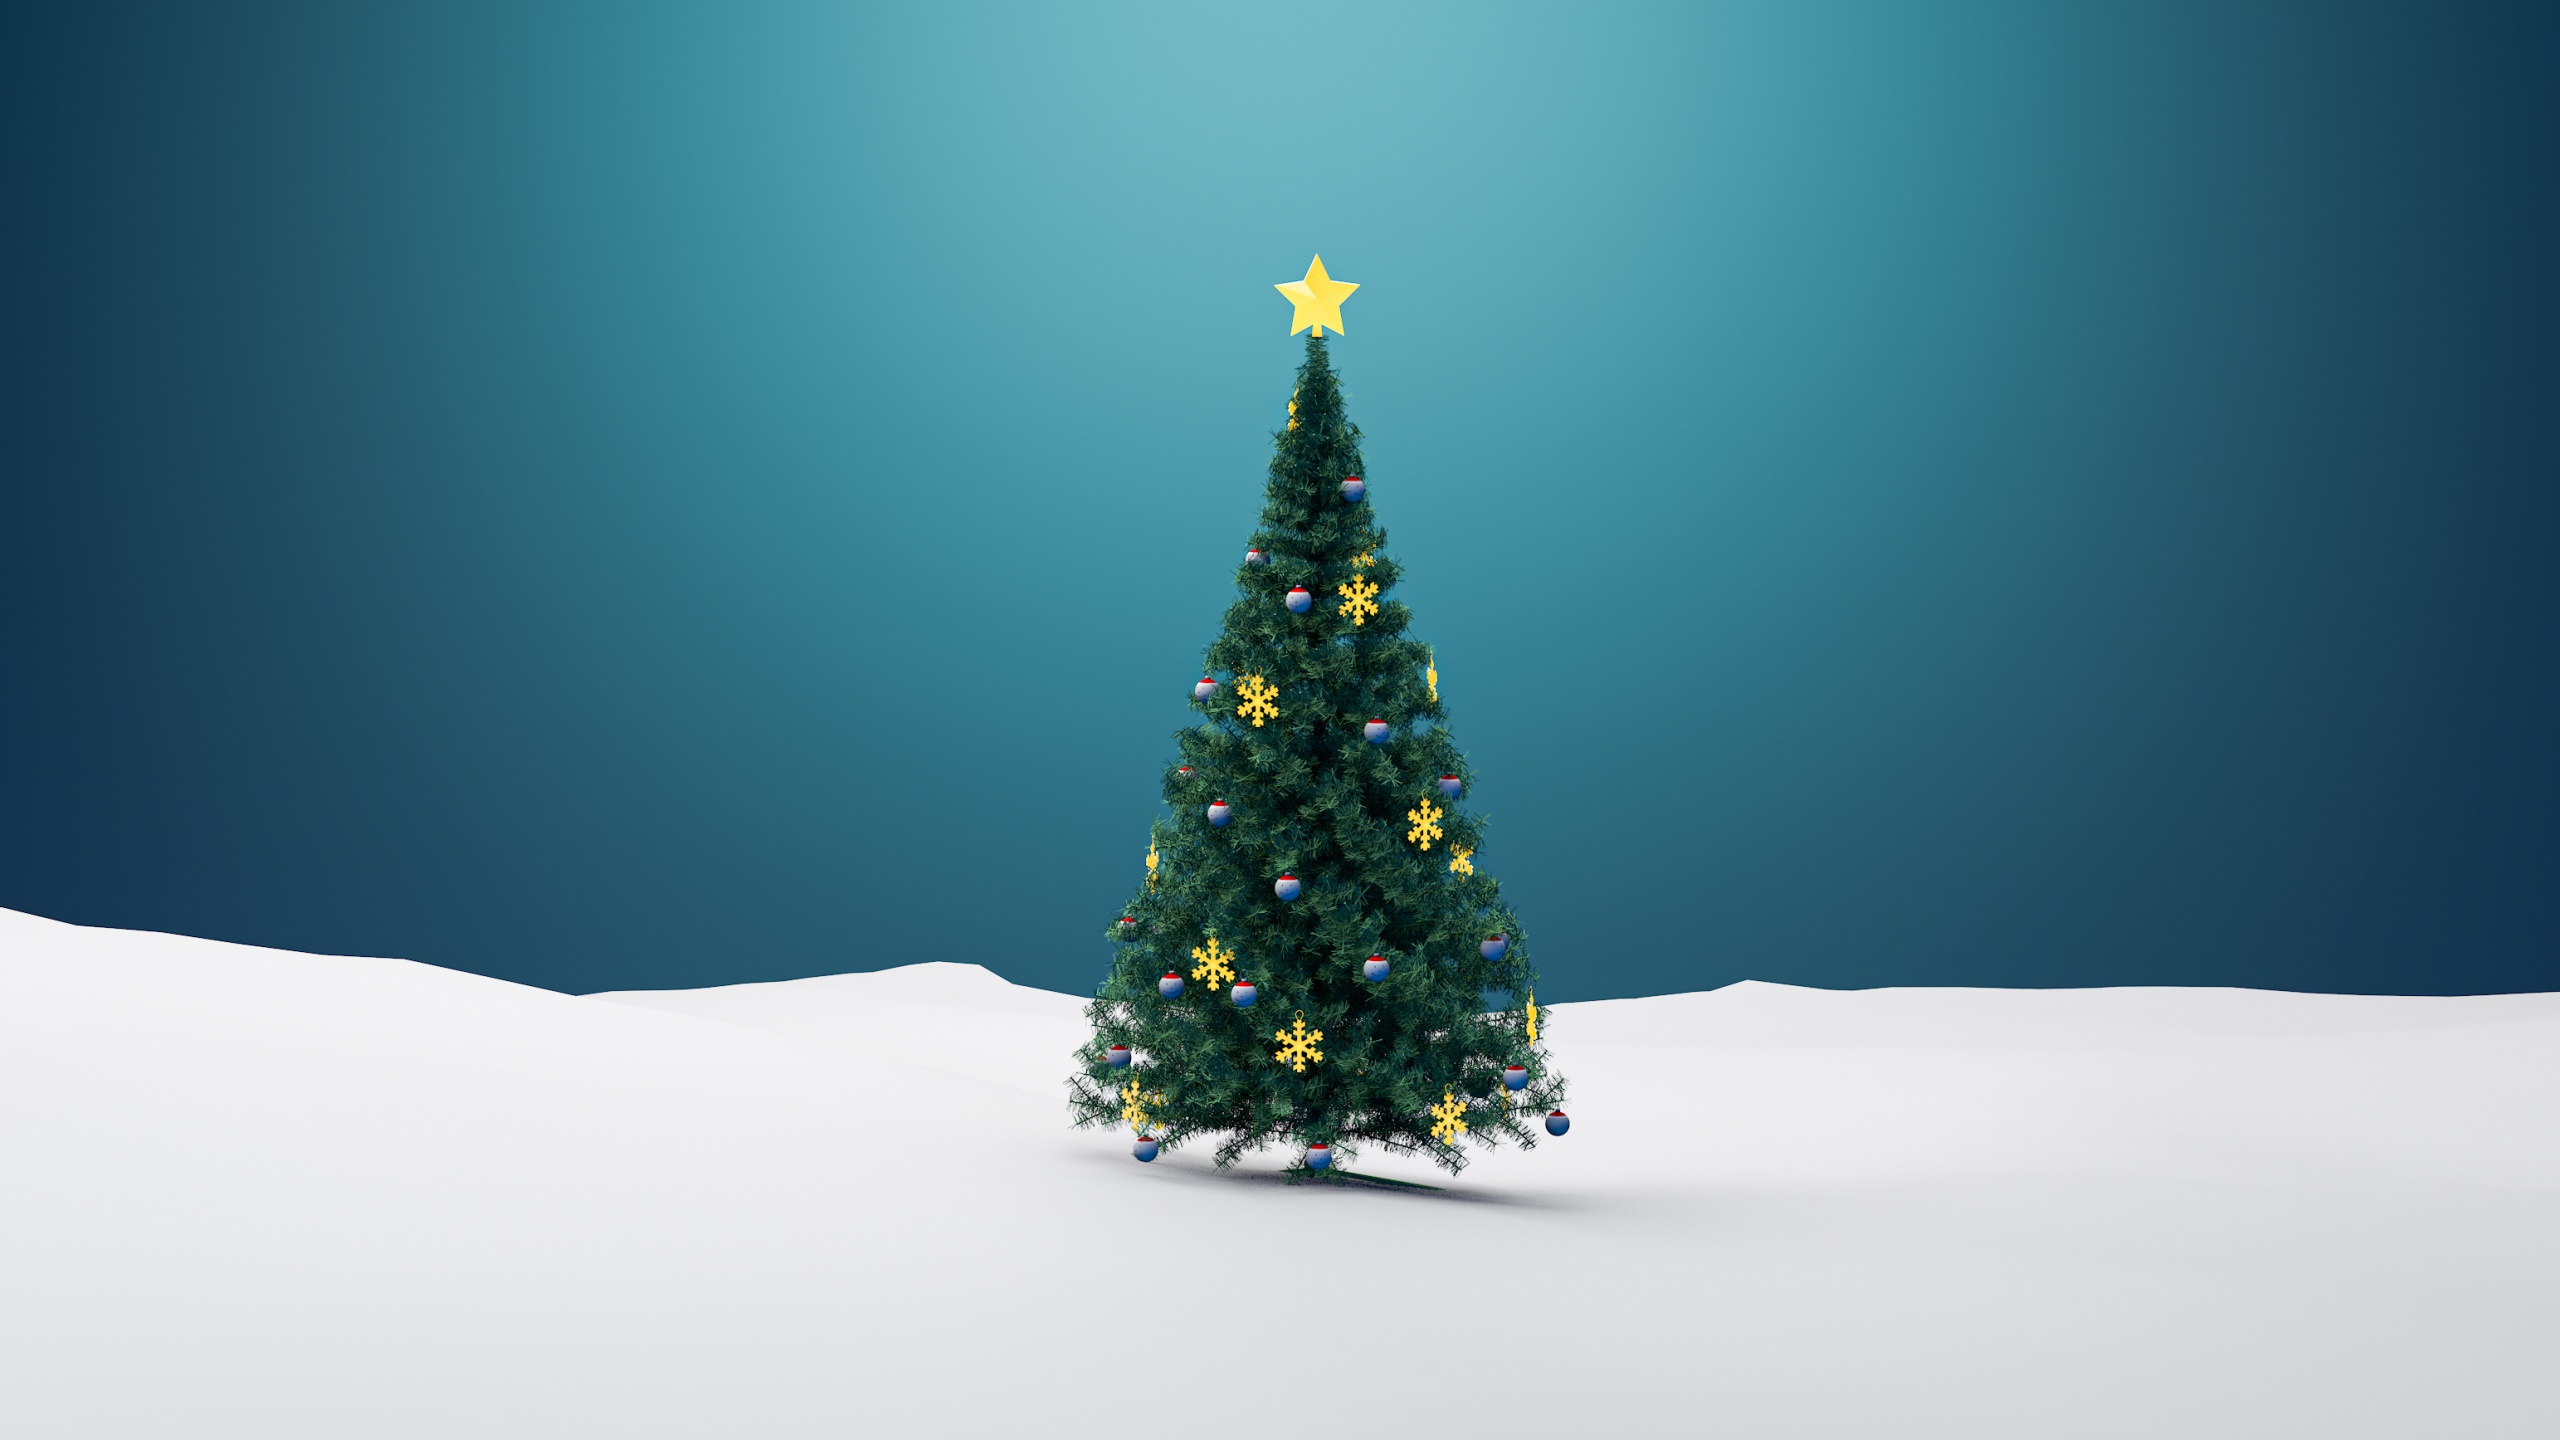 Cây thông Giáng sinh: Cây thông Noel mỗi năm lại được trang trí rực rỡ và đẹp lung linh hơn trước. Đến với những hình ảnh cây thông Noel với những món đồ trang trí tuyệt đẹp, bạn sẽ có một cái nhìn khác và được đắm chìm trong không khí của ngày lễ Giáng sinh.